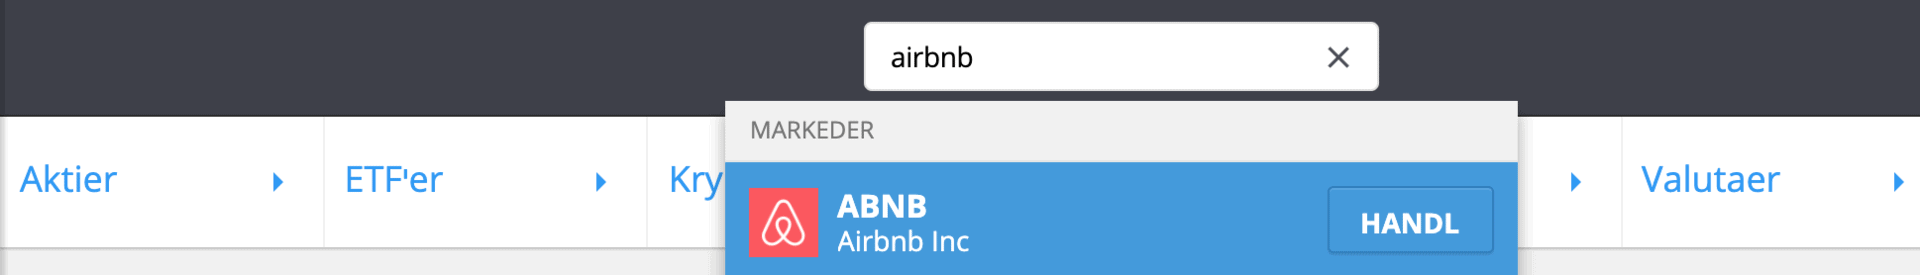 Søg efter AirBnB aktier på eToro